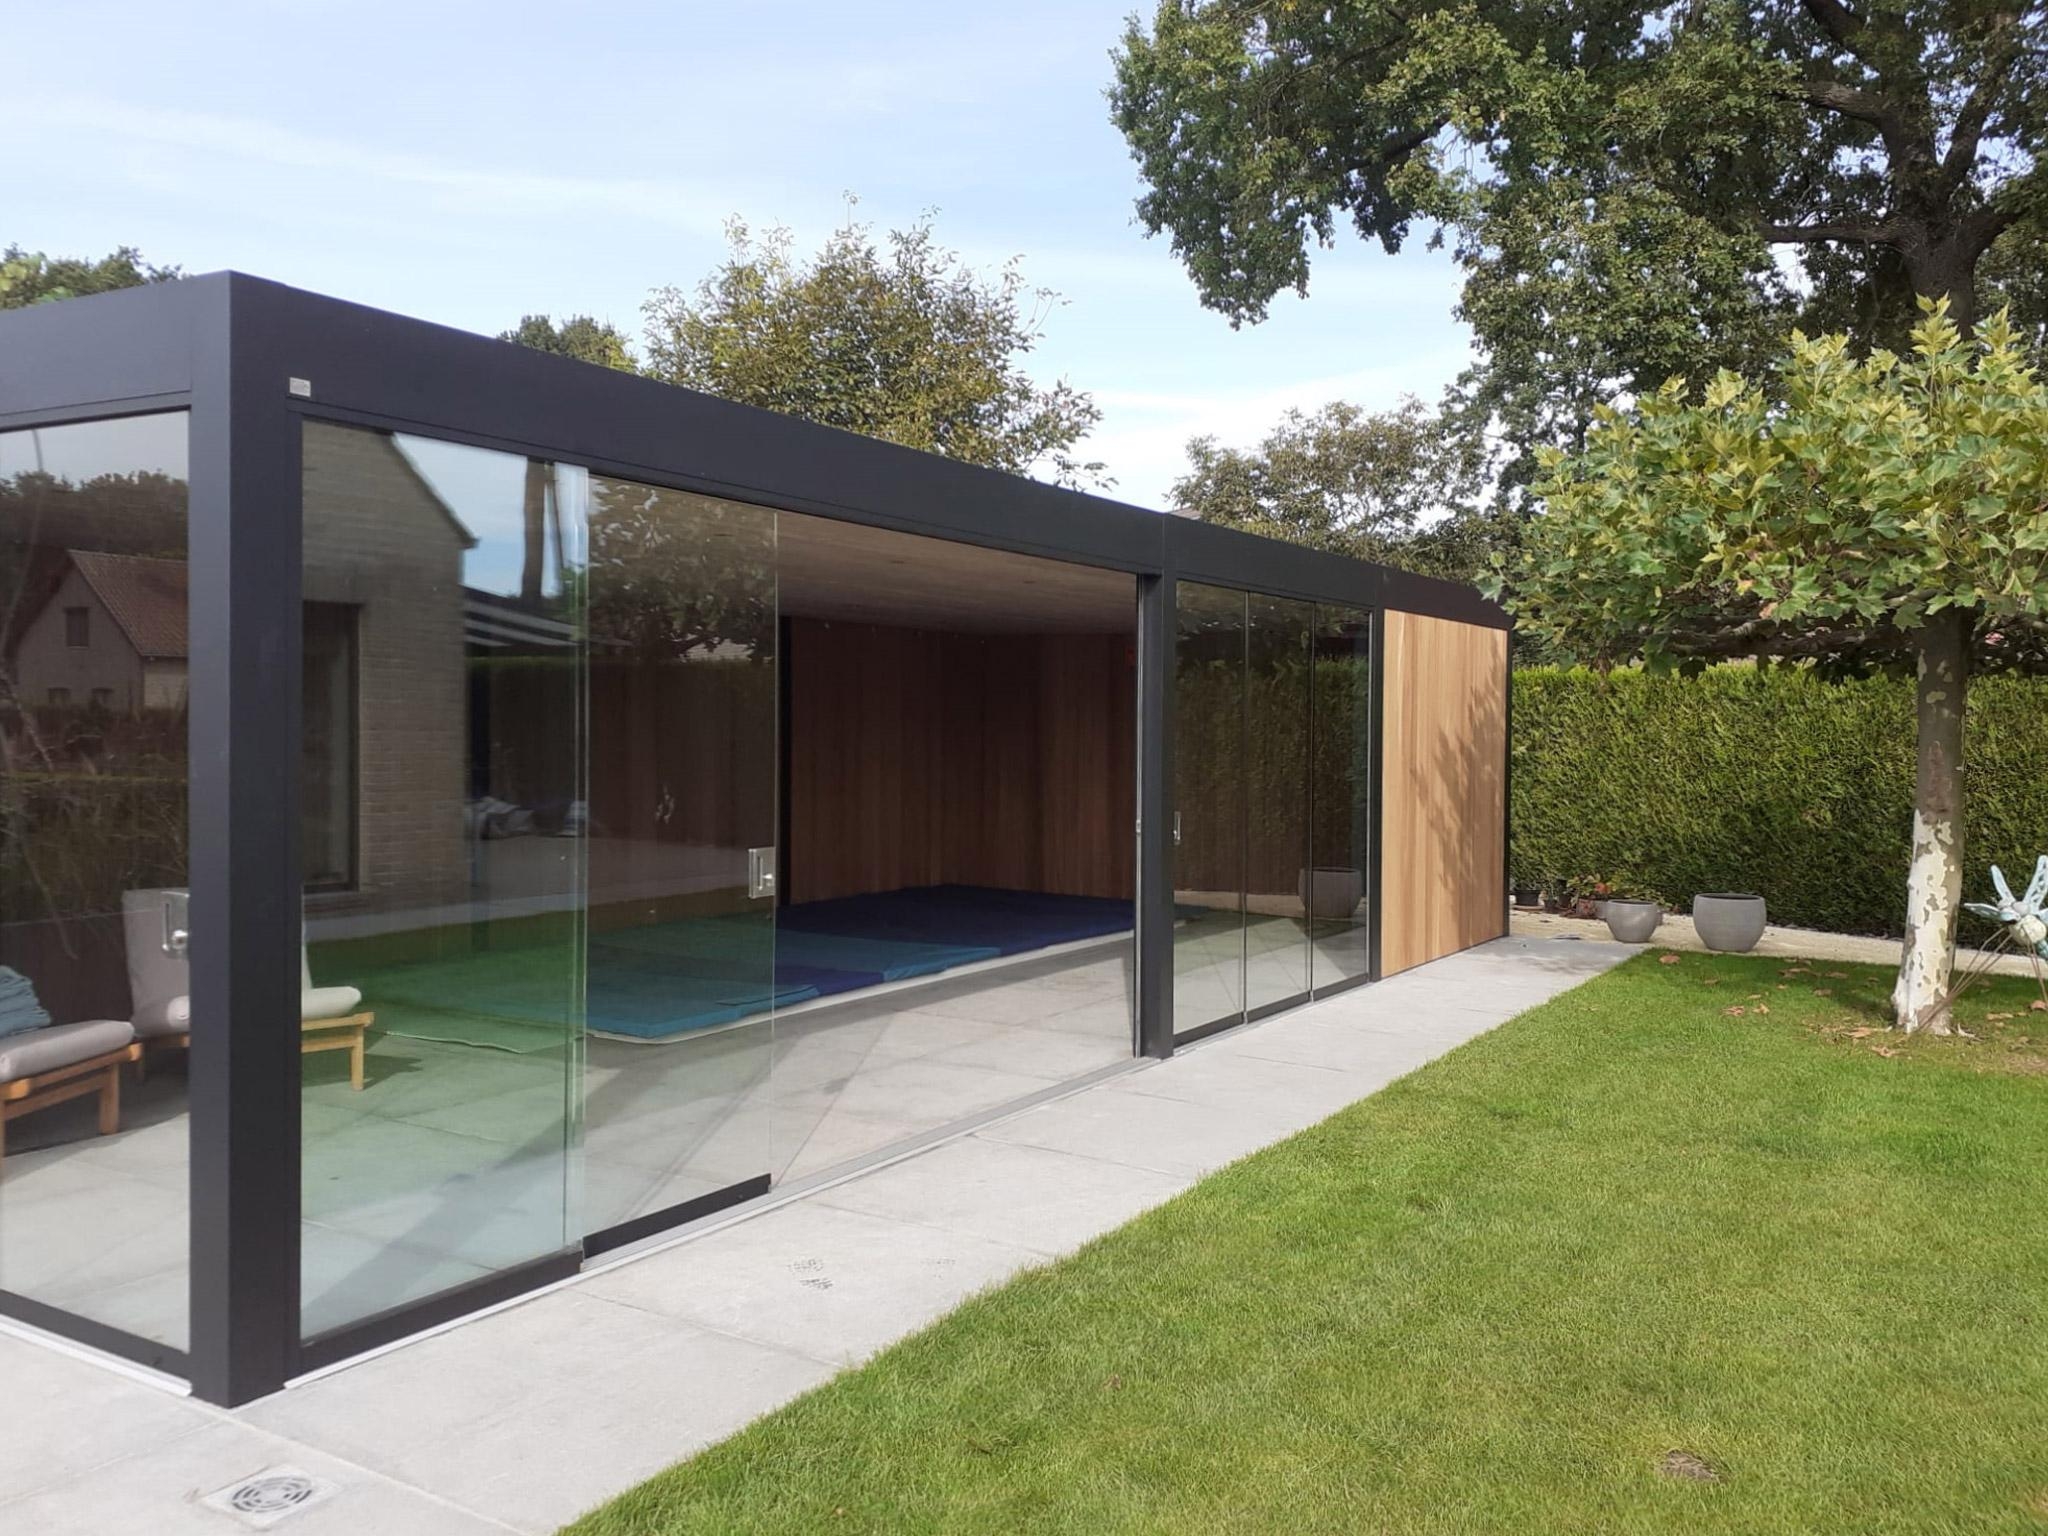 Modernes Poolhaus mit Glasschiebetüren. Idealer Wetterschutz für die Übergangszeit! 🍂🌰🍁